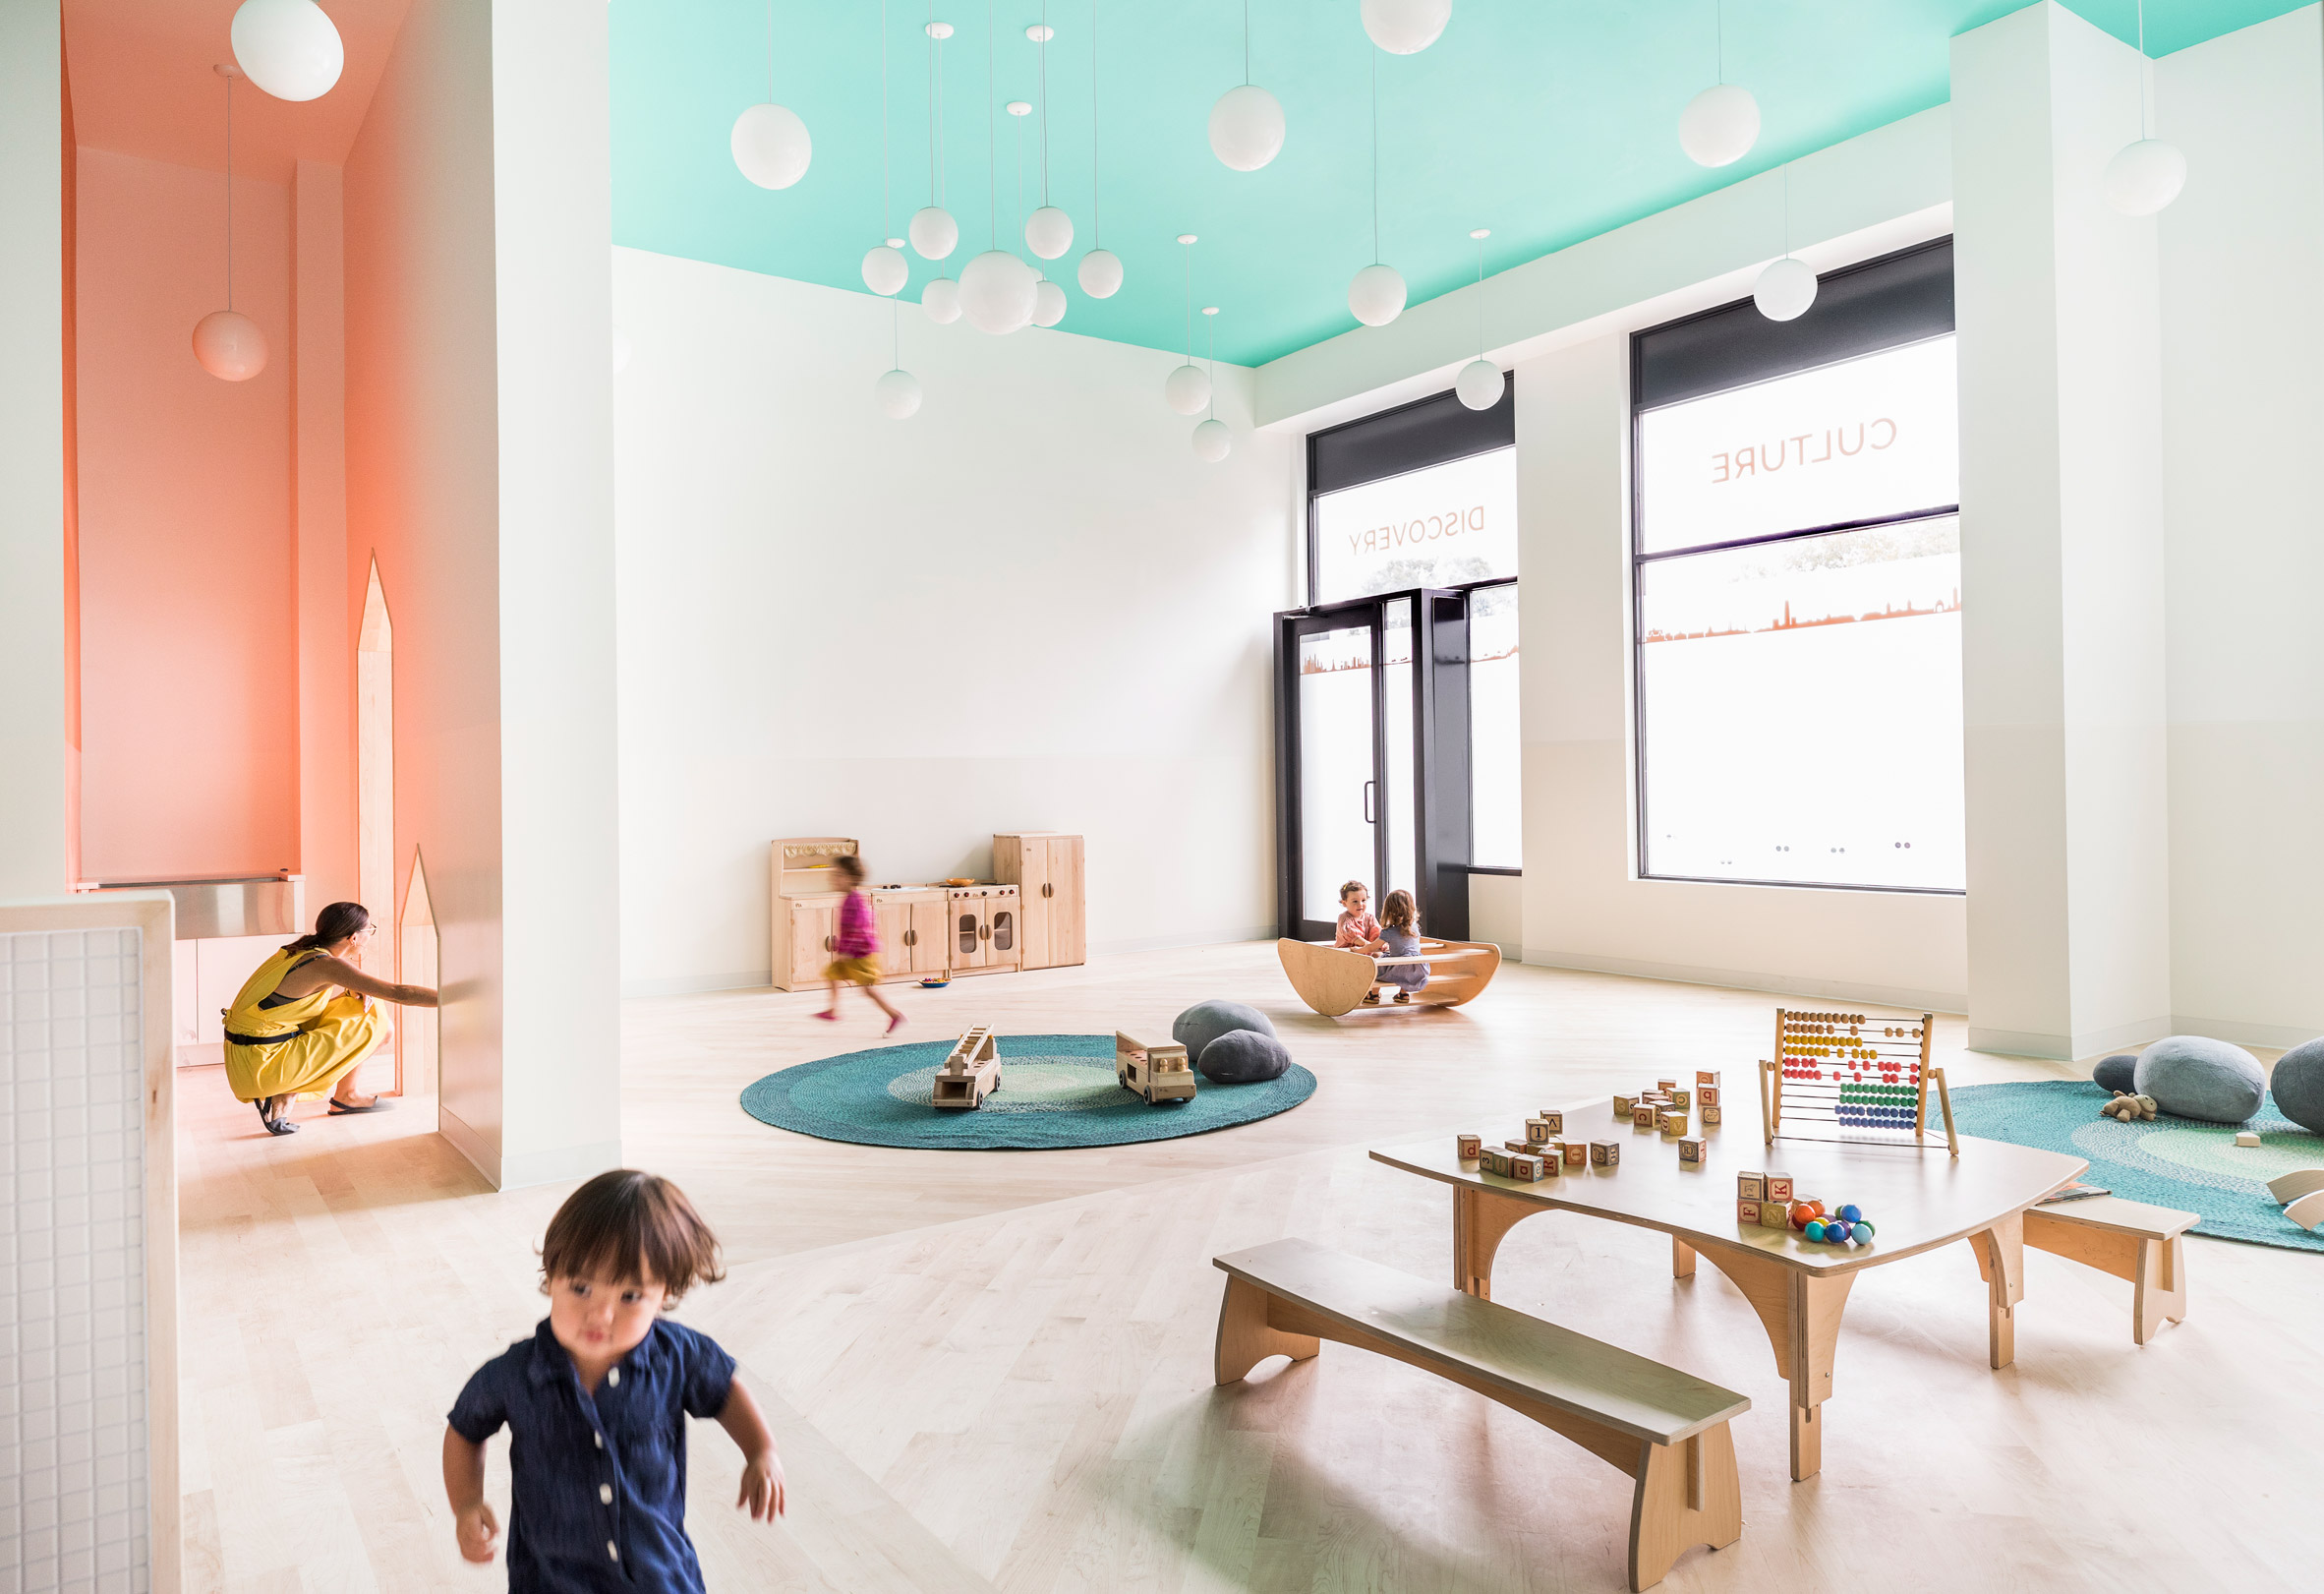 Mi Casita preschool interior with bright colours